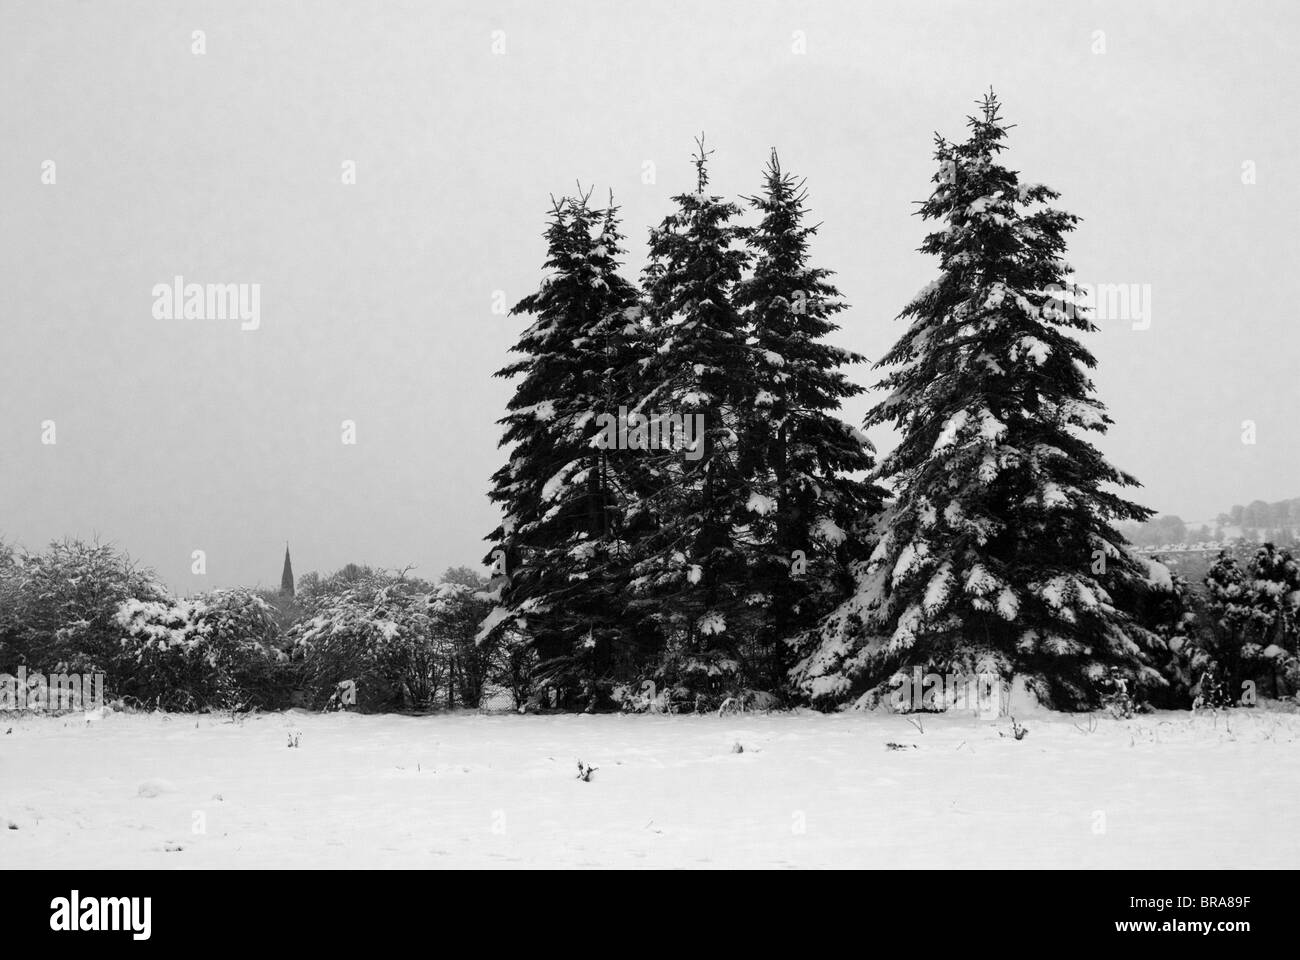 Schwarz und weiß, Turm immergrüne Bäume im Schnee, mit Kirche in Ferne. Stockfoto